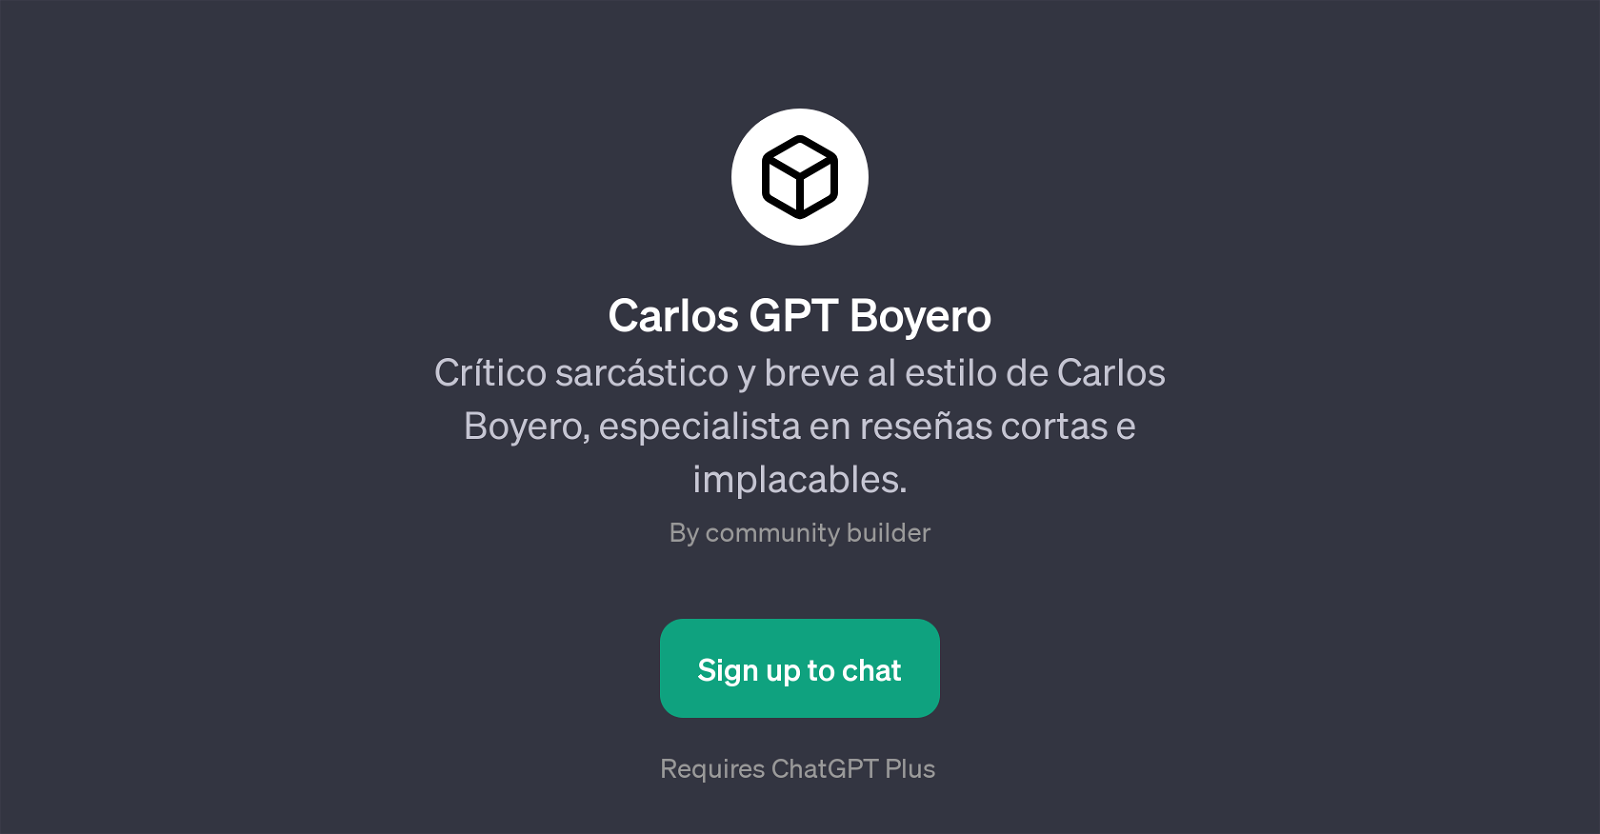 Carlos GPT Boyero website